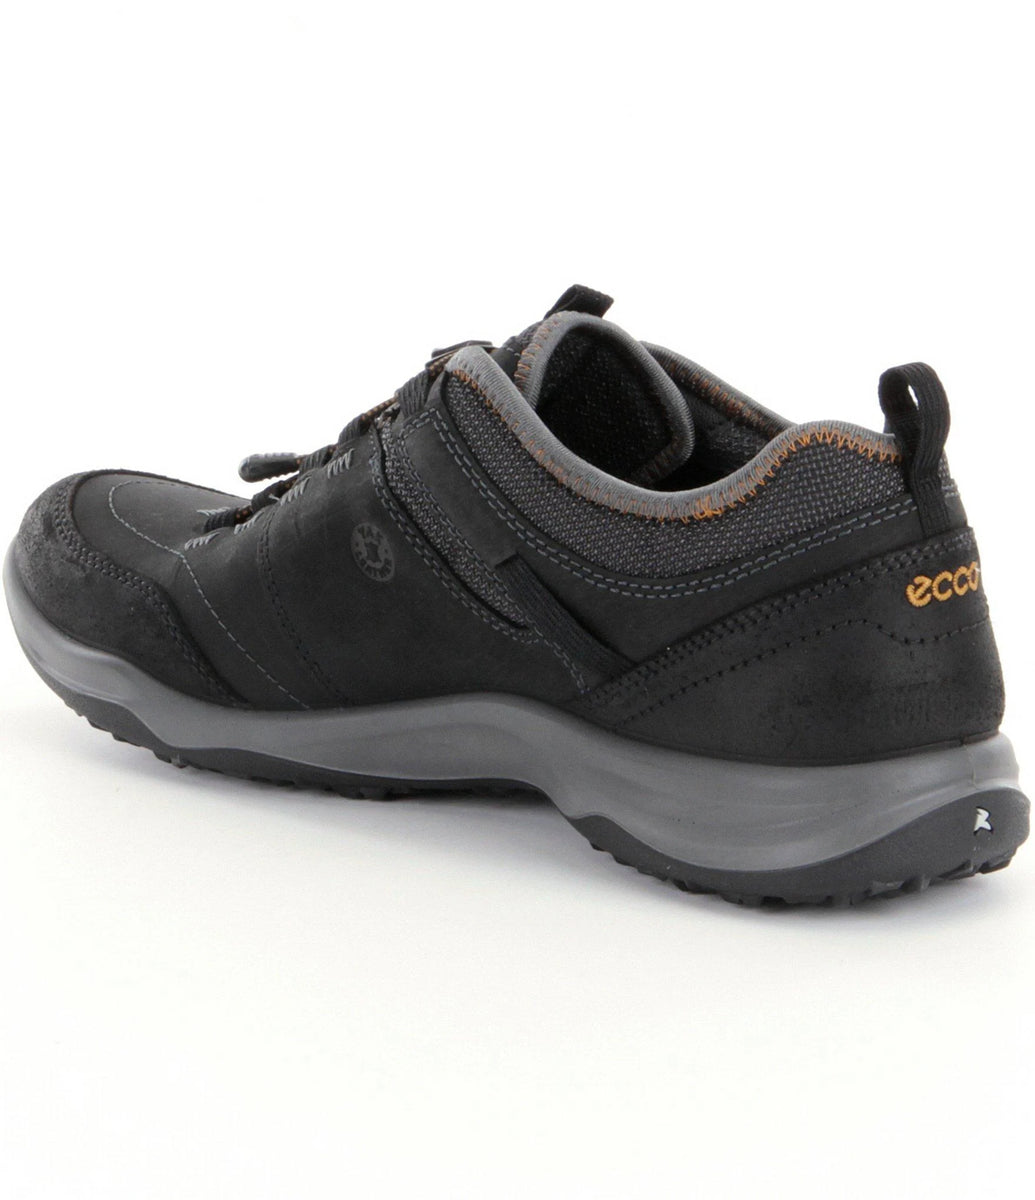 Espinho – Valentino's Comfort Shoes